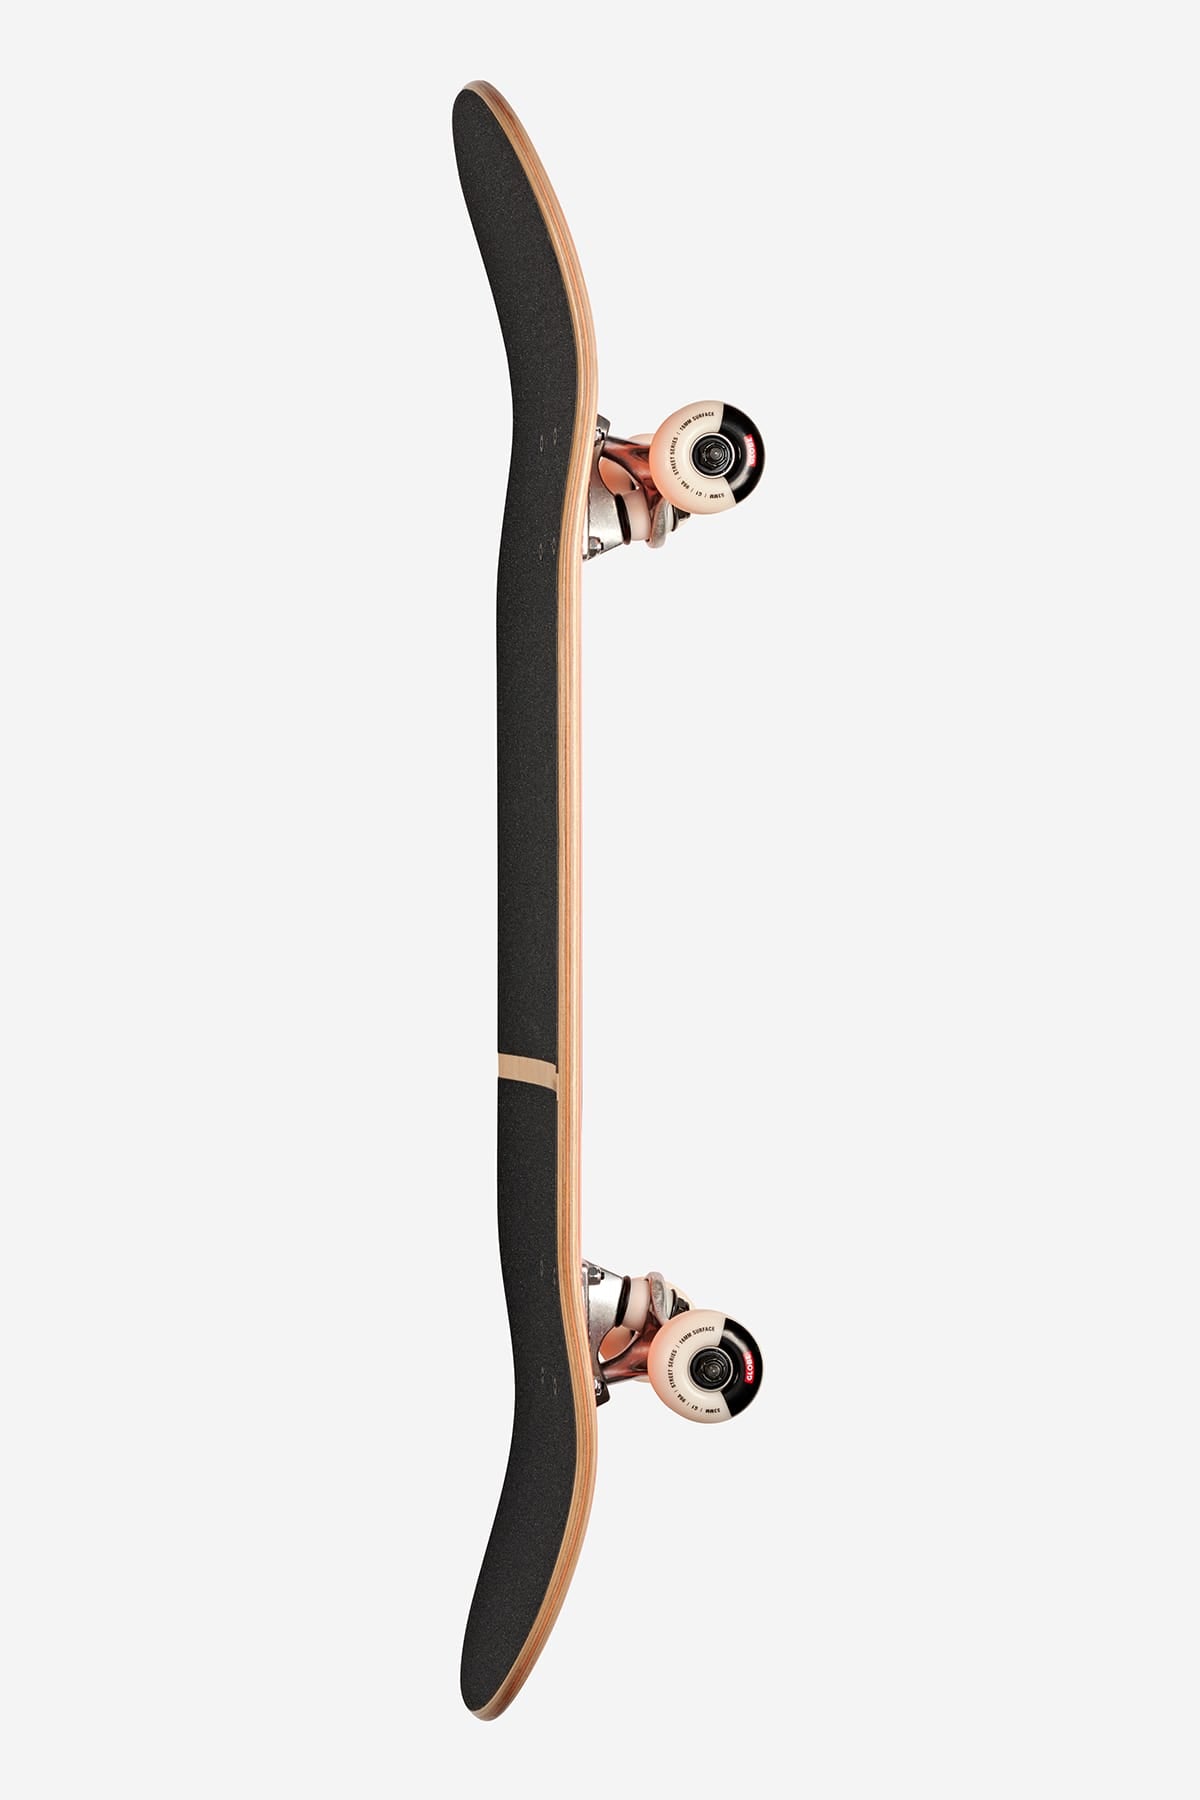 Globe - G1 Digital Nurture - Machine Made Man - 8.0" Completo Skateboard